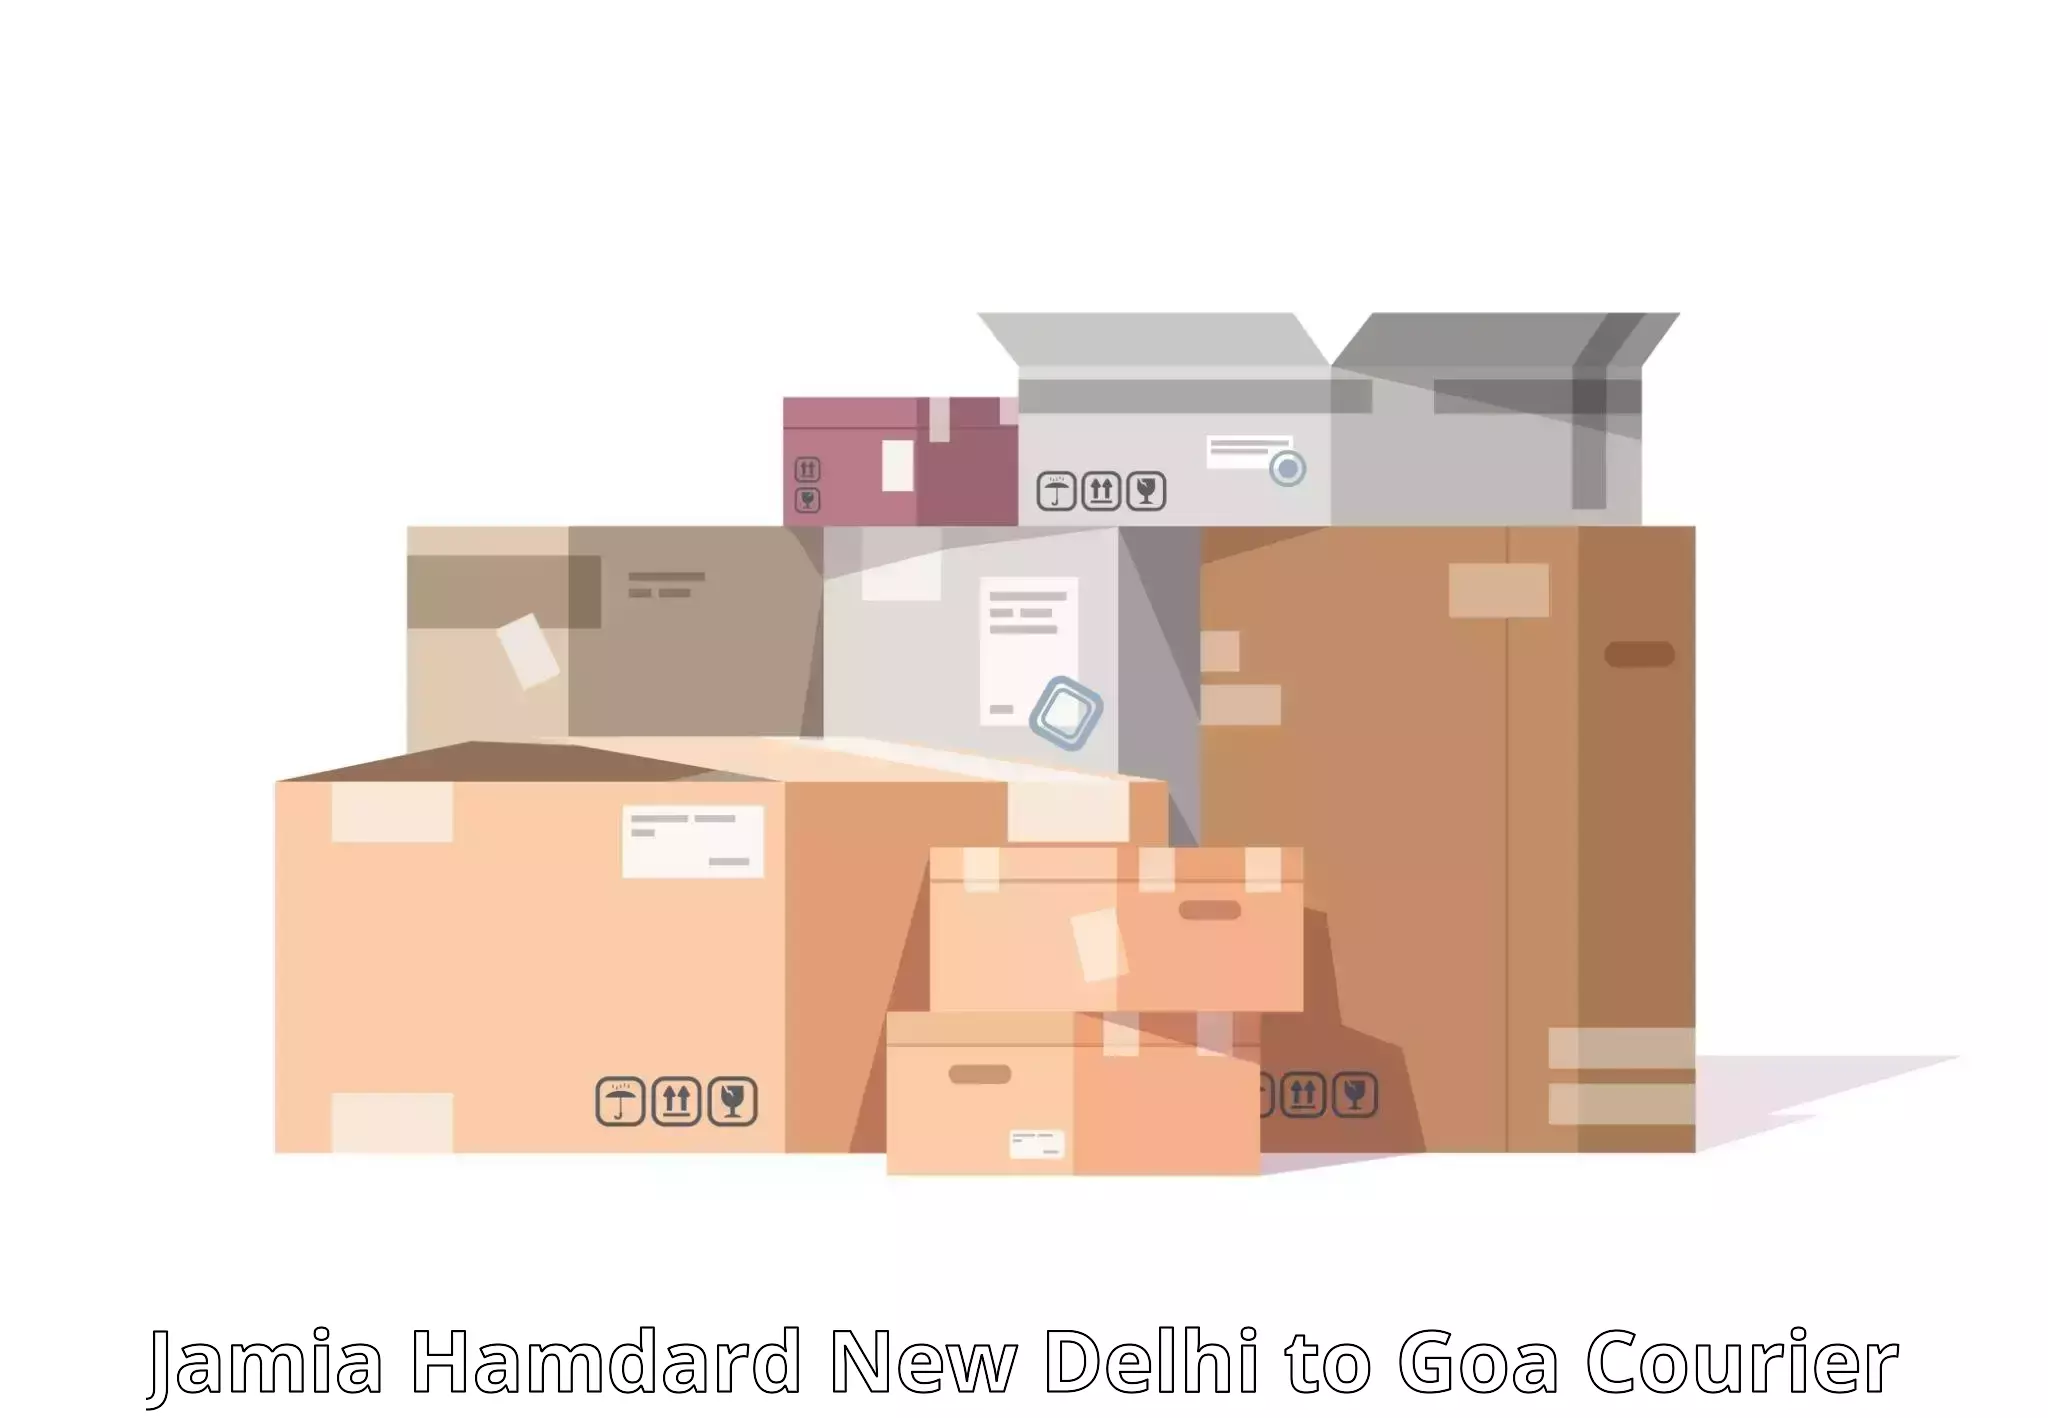 Express delivery capabilities Jamia Hamdard New Delhi to Canacona